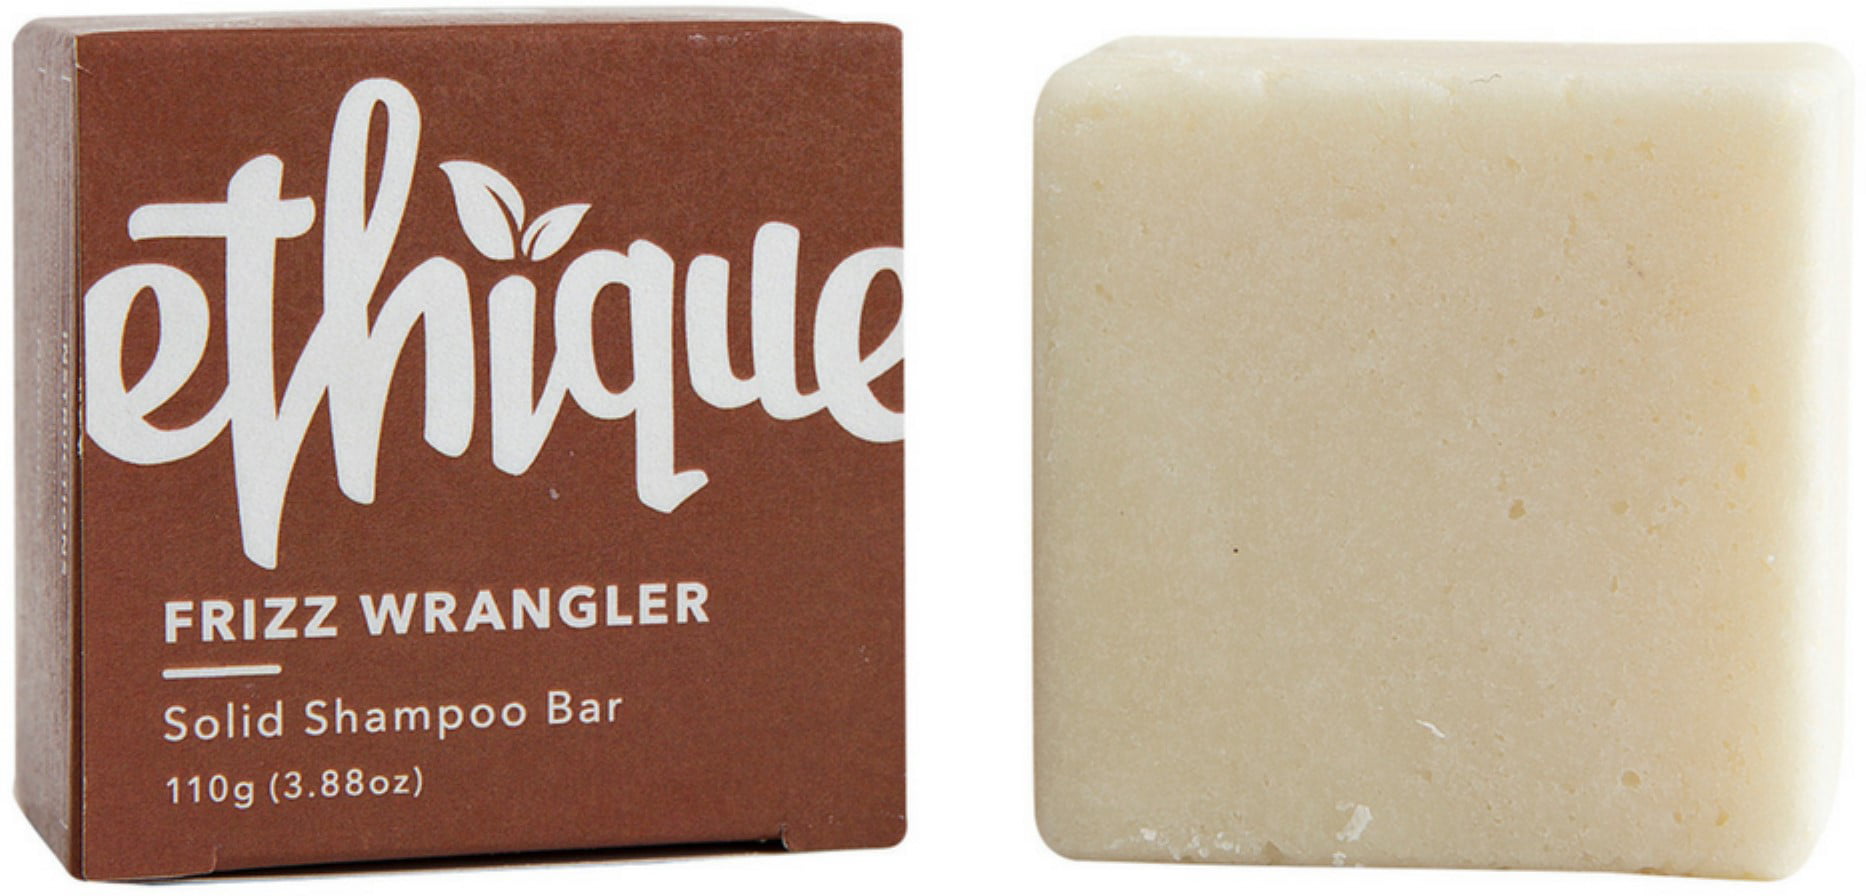 Ethique Eco-Friendly Solid Shampoo Bar, Frizz Wrangler 3.88 oz